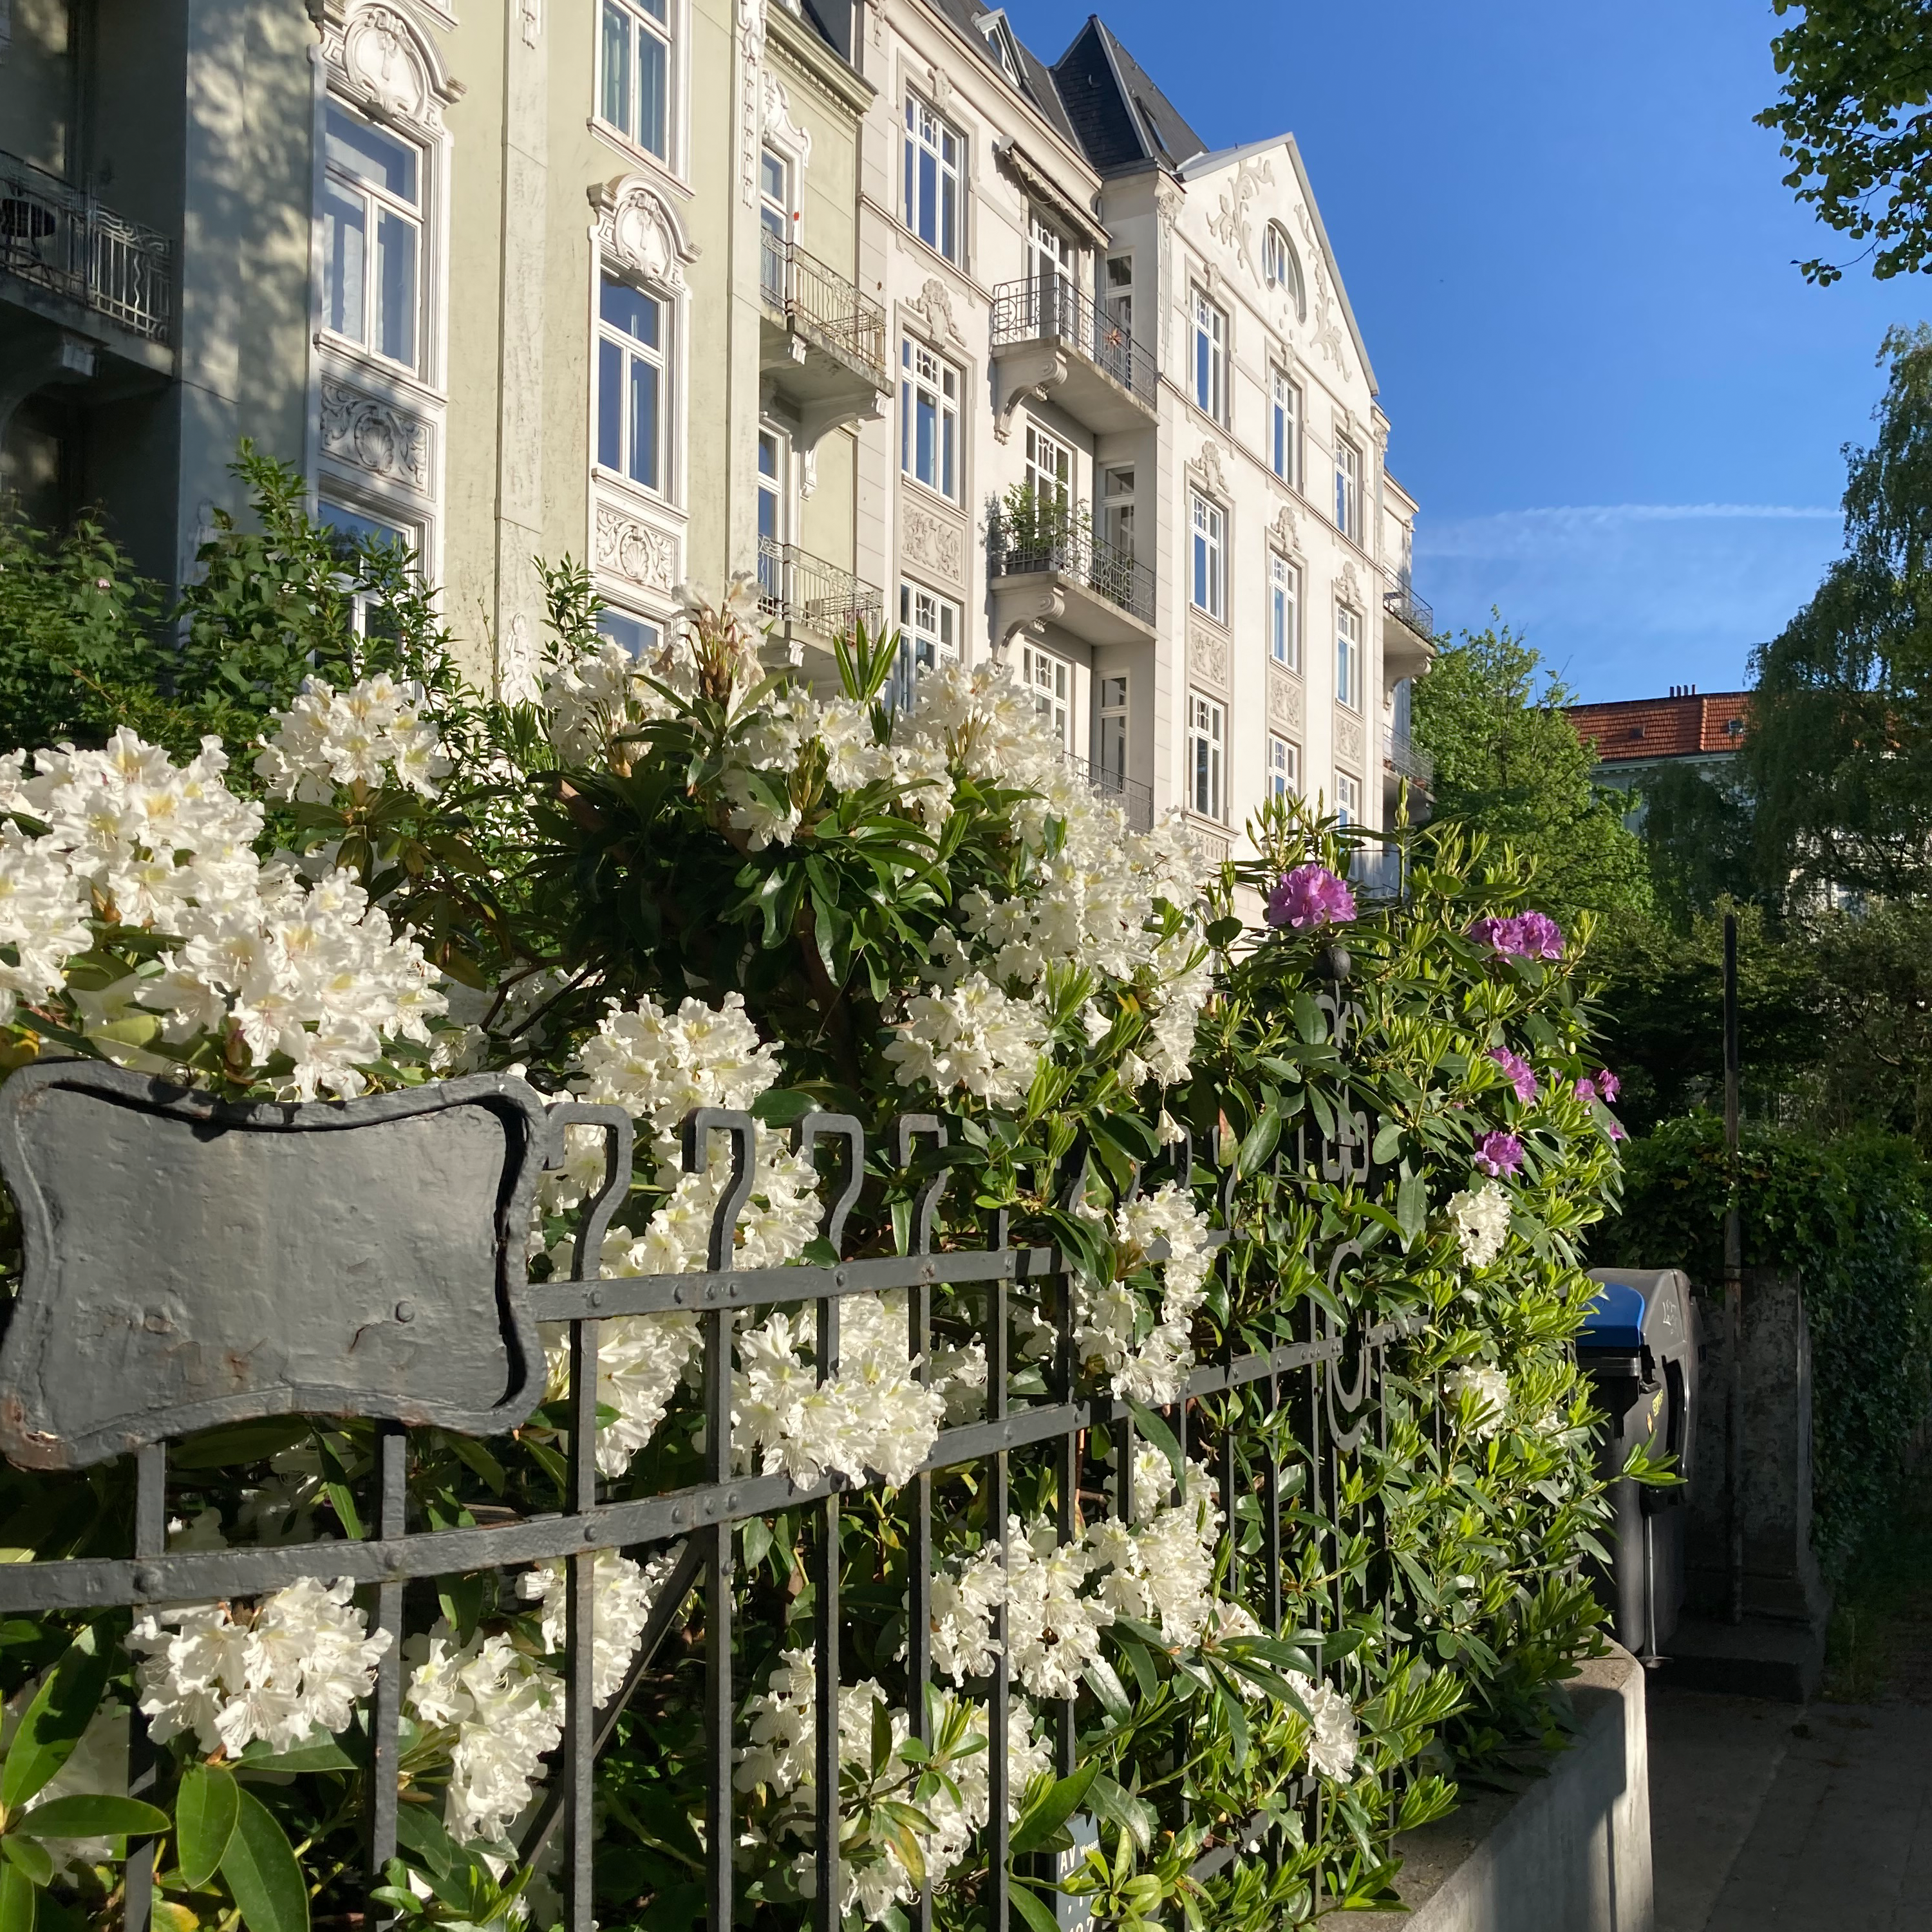 Rhododendrenblüten im Zaun vor Gründerzeithäusern